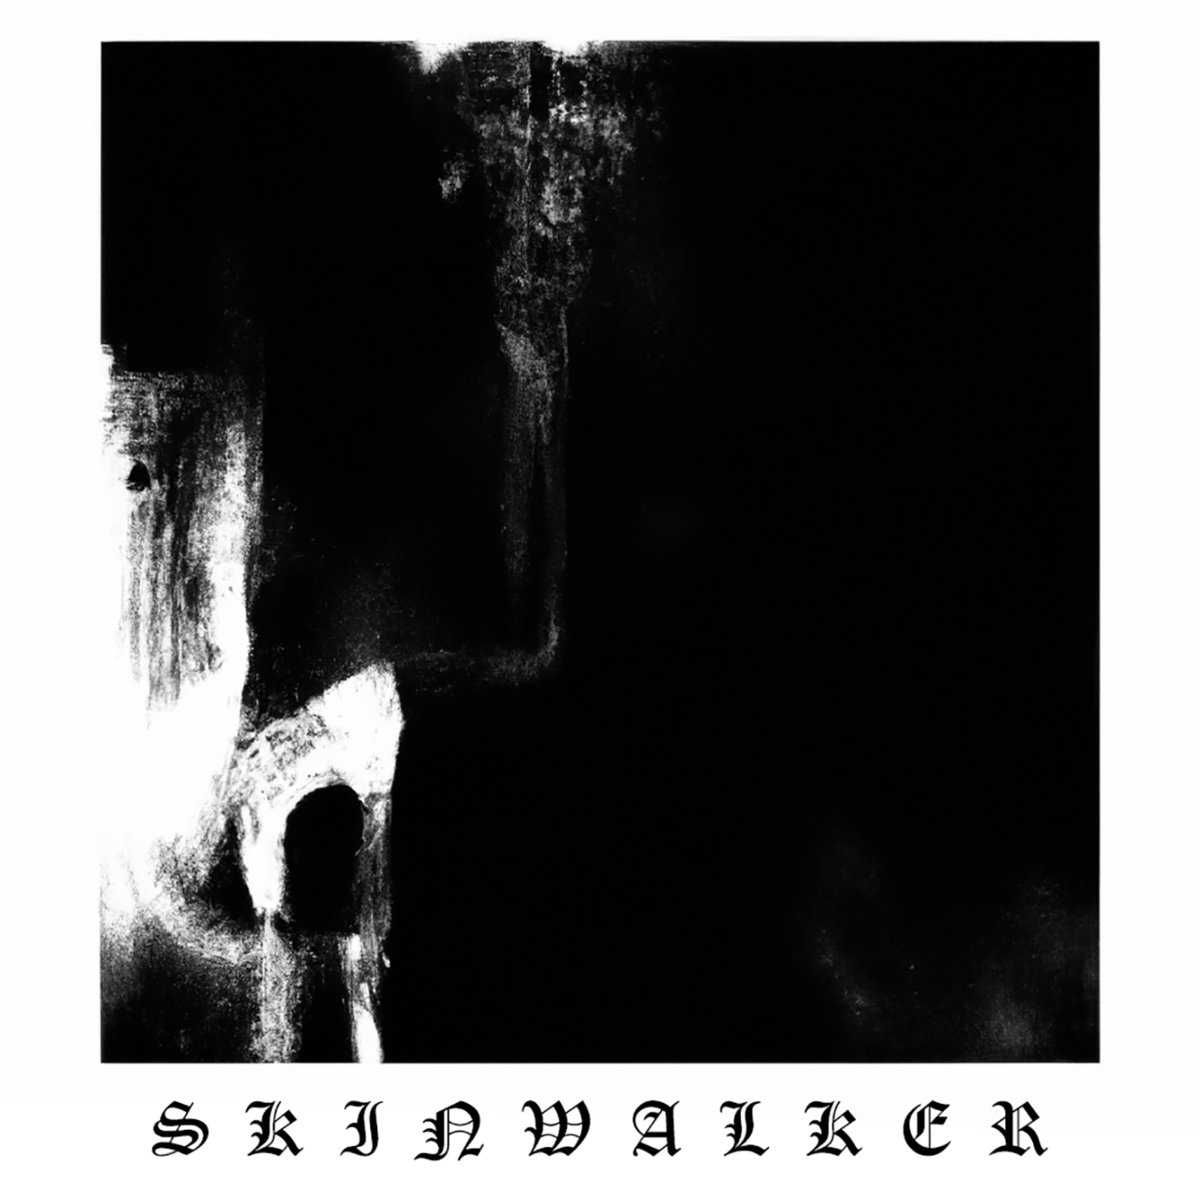 Skinwalker - "Penance" - 2023